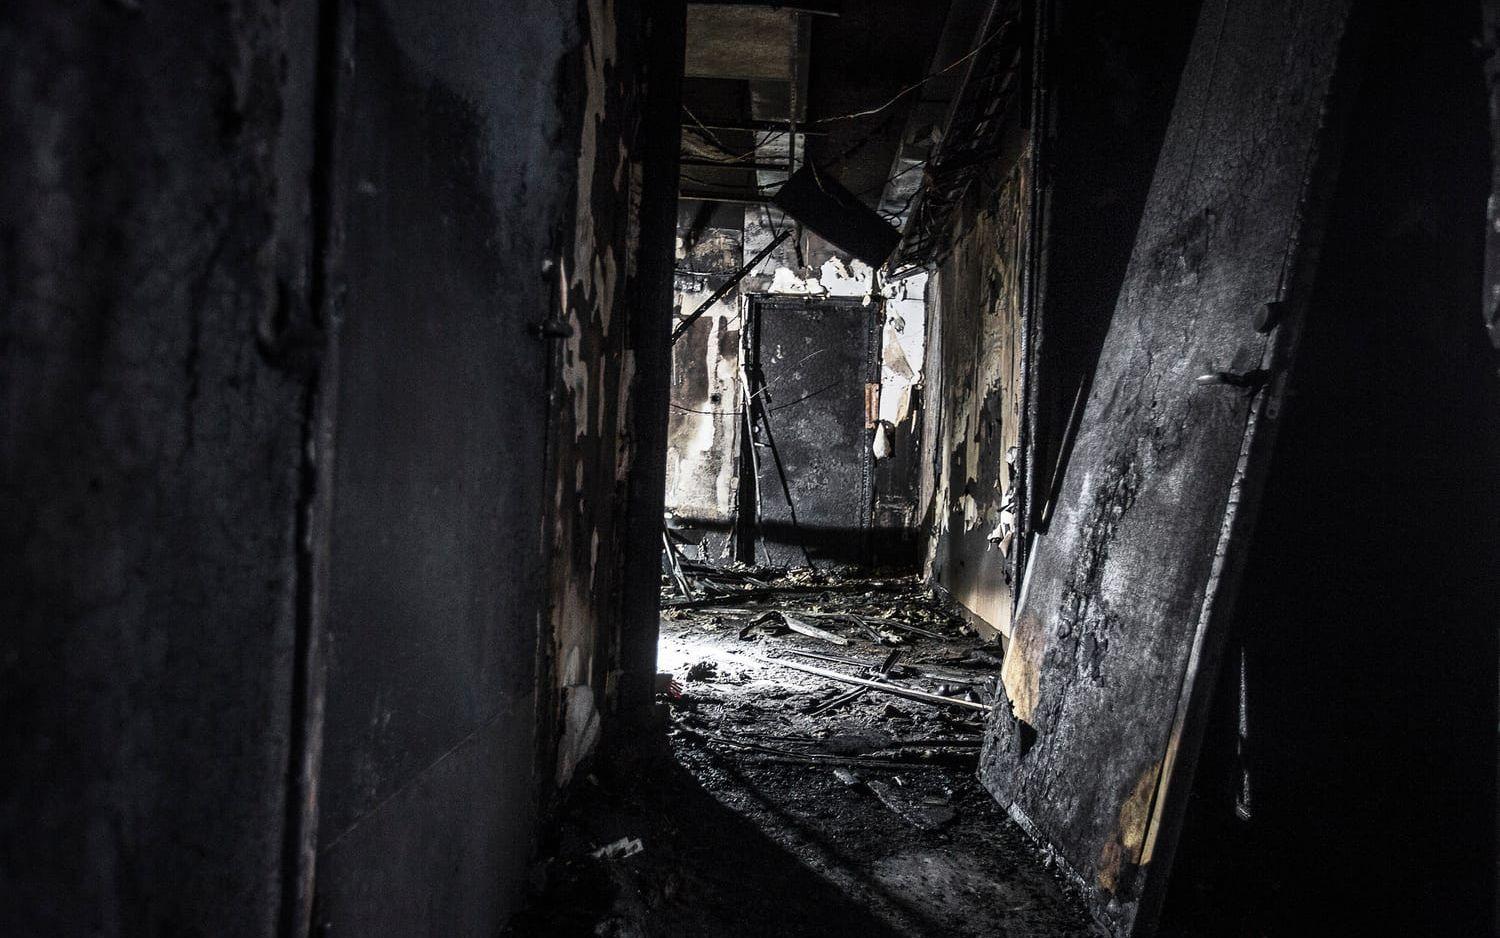 Boendets ena korridor slutar i ett uppehållsrum där branden troligen startade. Dagarna efter branden gjorde polisen en teknisk undersökning i samverkan med räddningstjänsten.